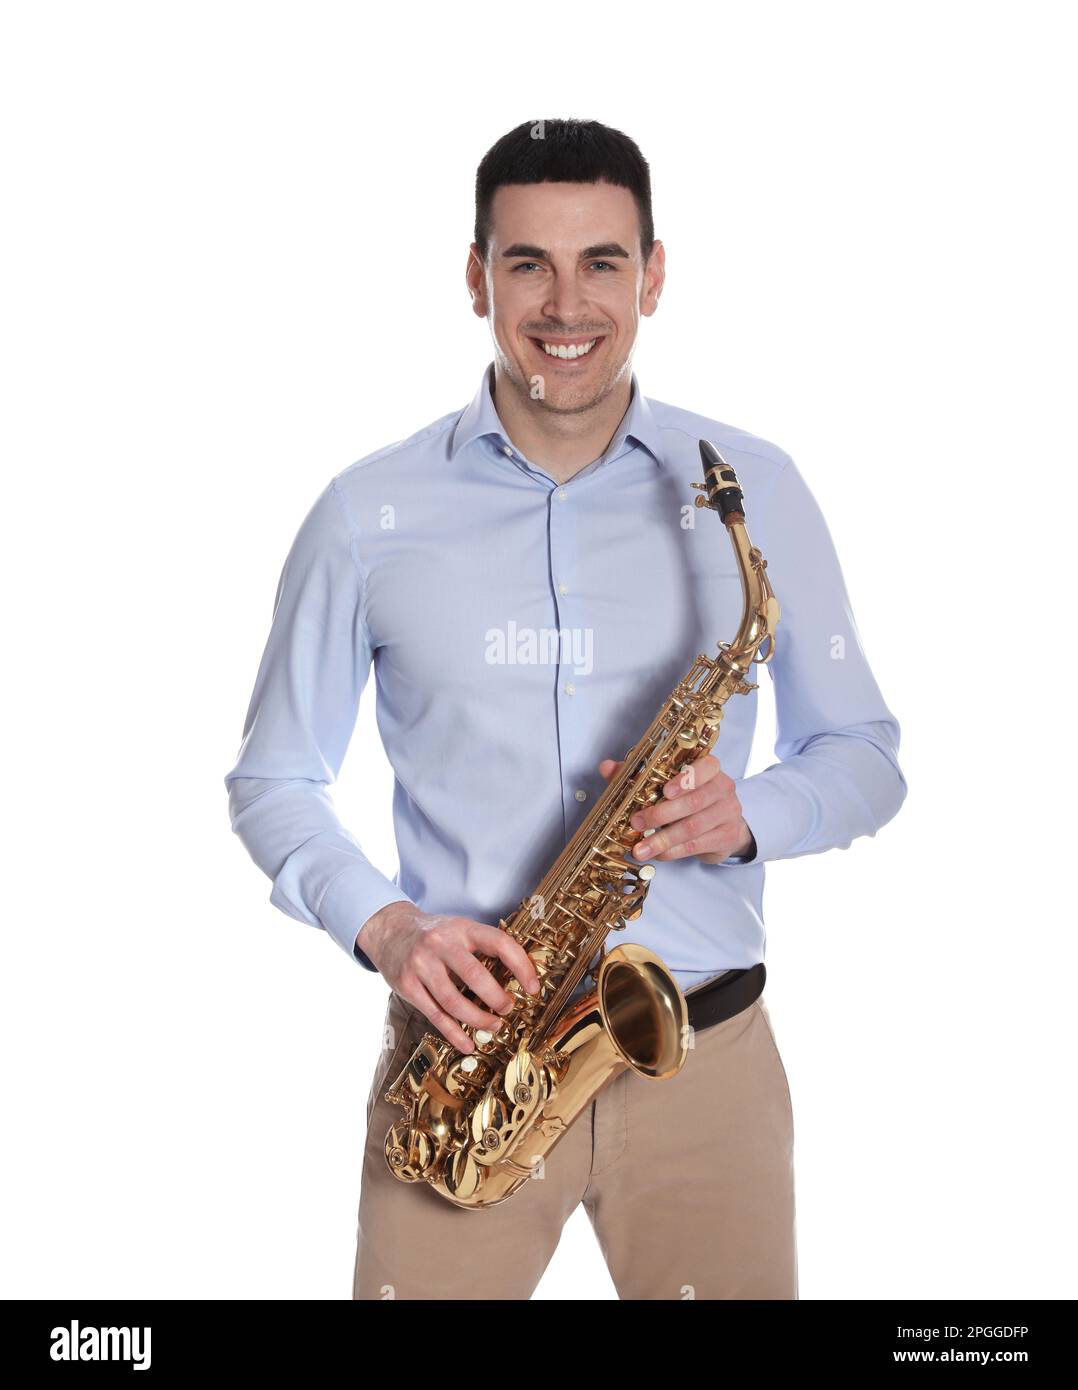 Un Joueur De Saxophone Dans La Robe Formelle De Concert Isolé Sur Blanc  Tenant Un Saxophone. Banque D'Images et Photos Libres De Droits. Image  48541027